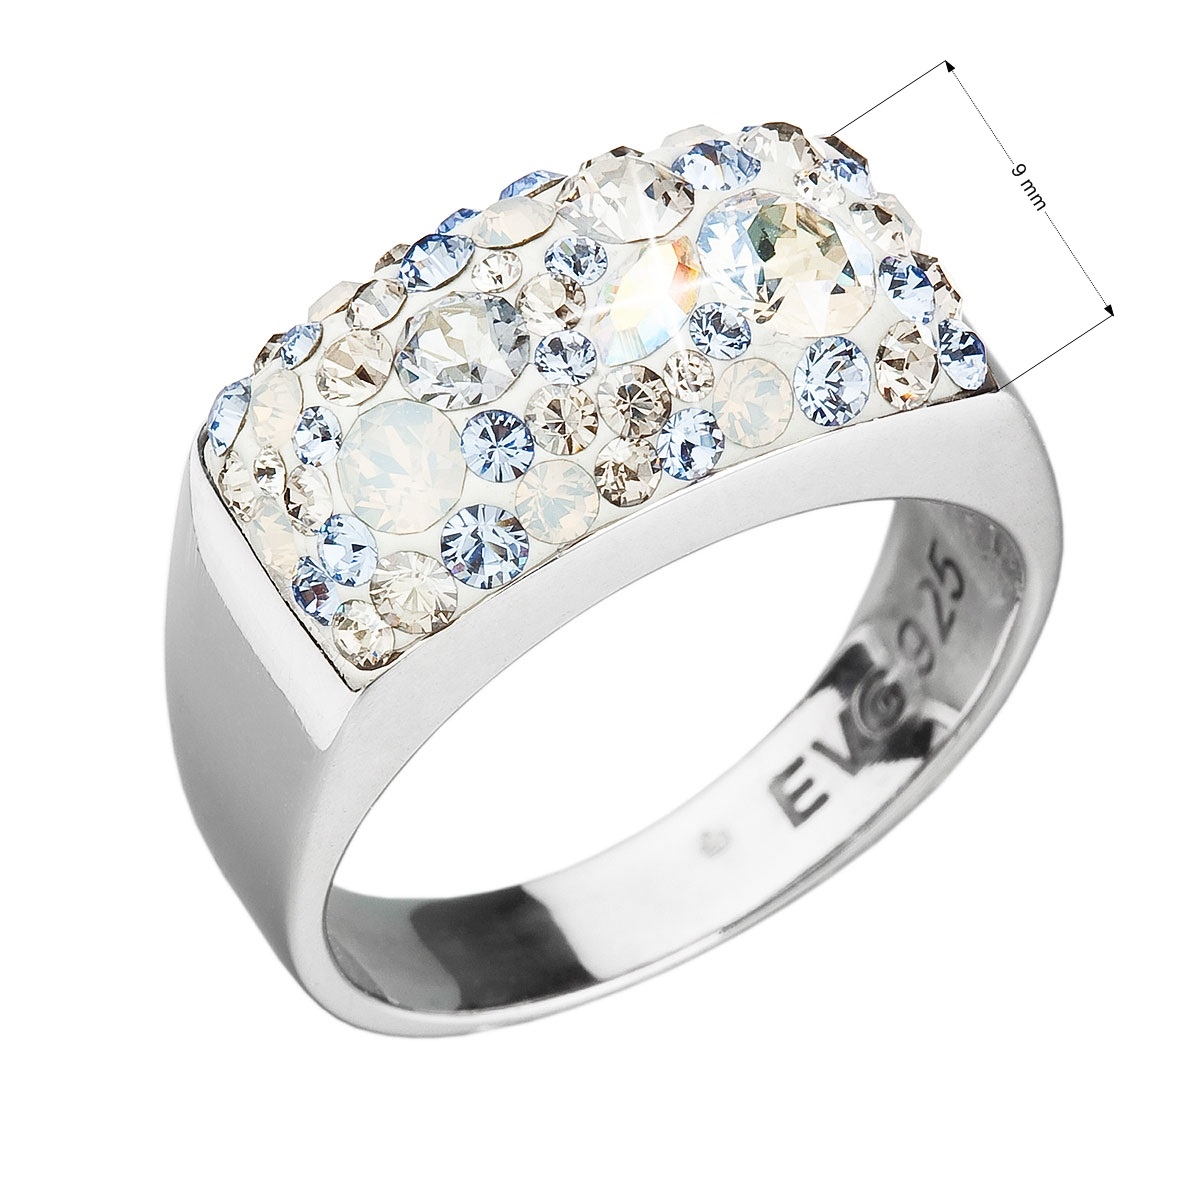 Strieborný prsteň s kameňmi Crystals from Swarovski ® Light Sapphire